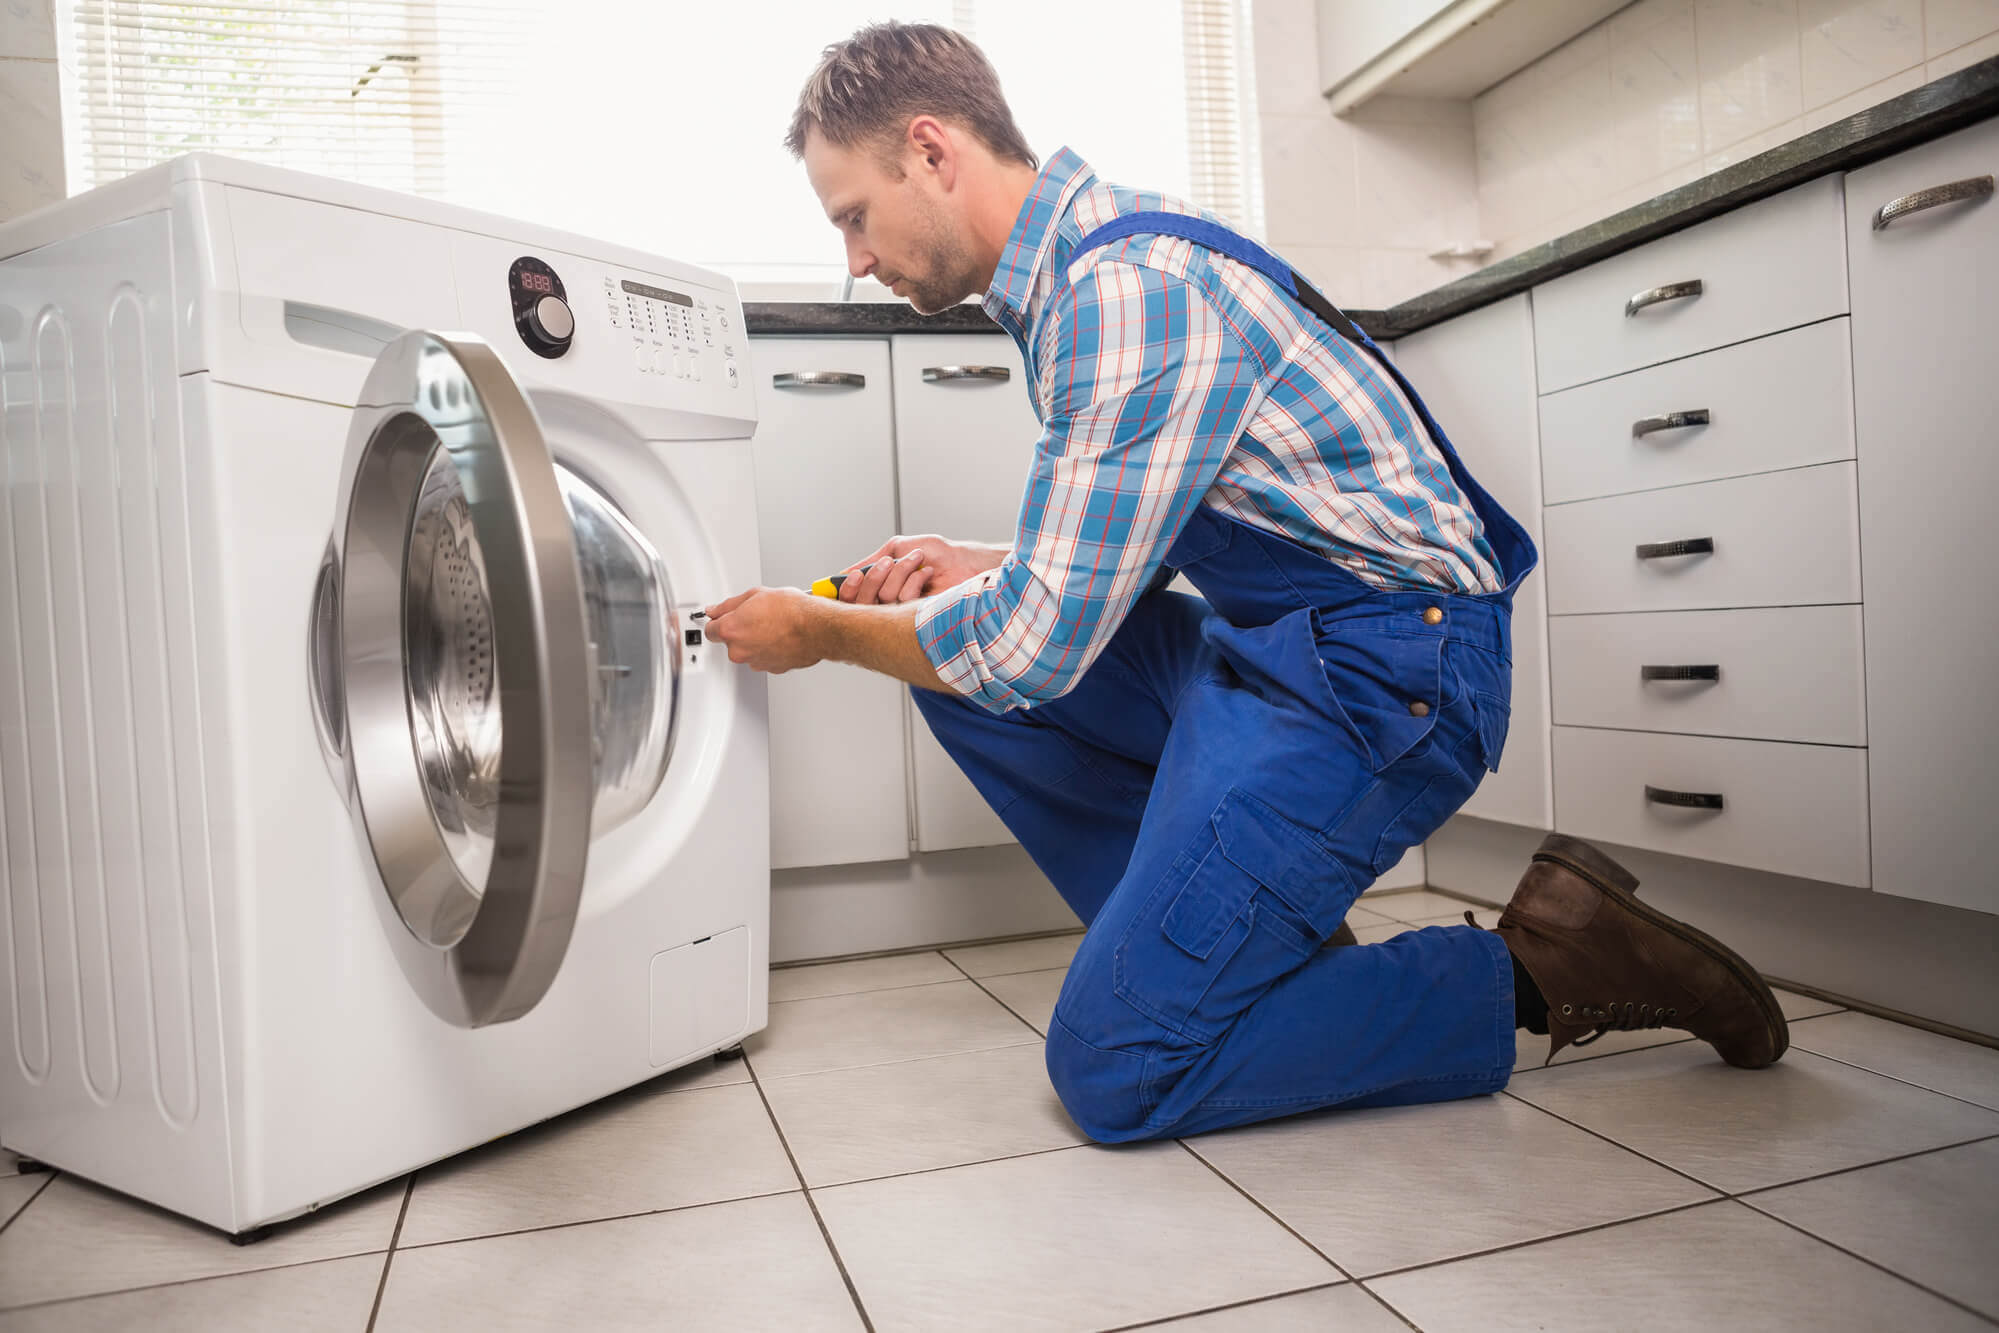 Conserto de máquina de lavar: faça você mesmo os reparos | Triider